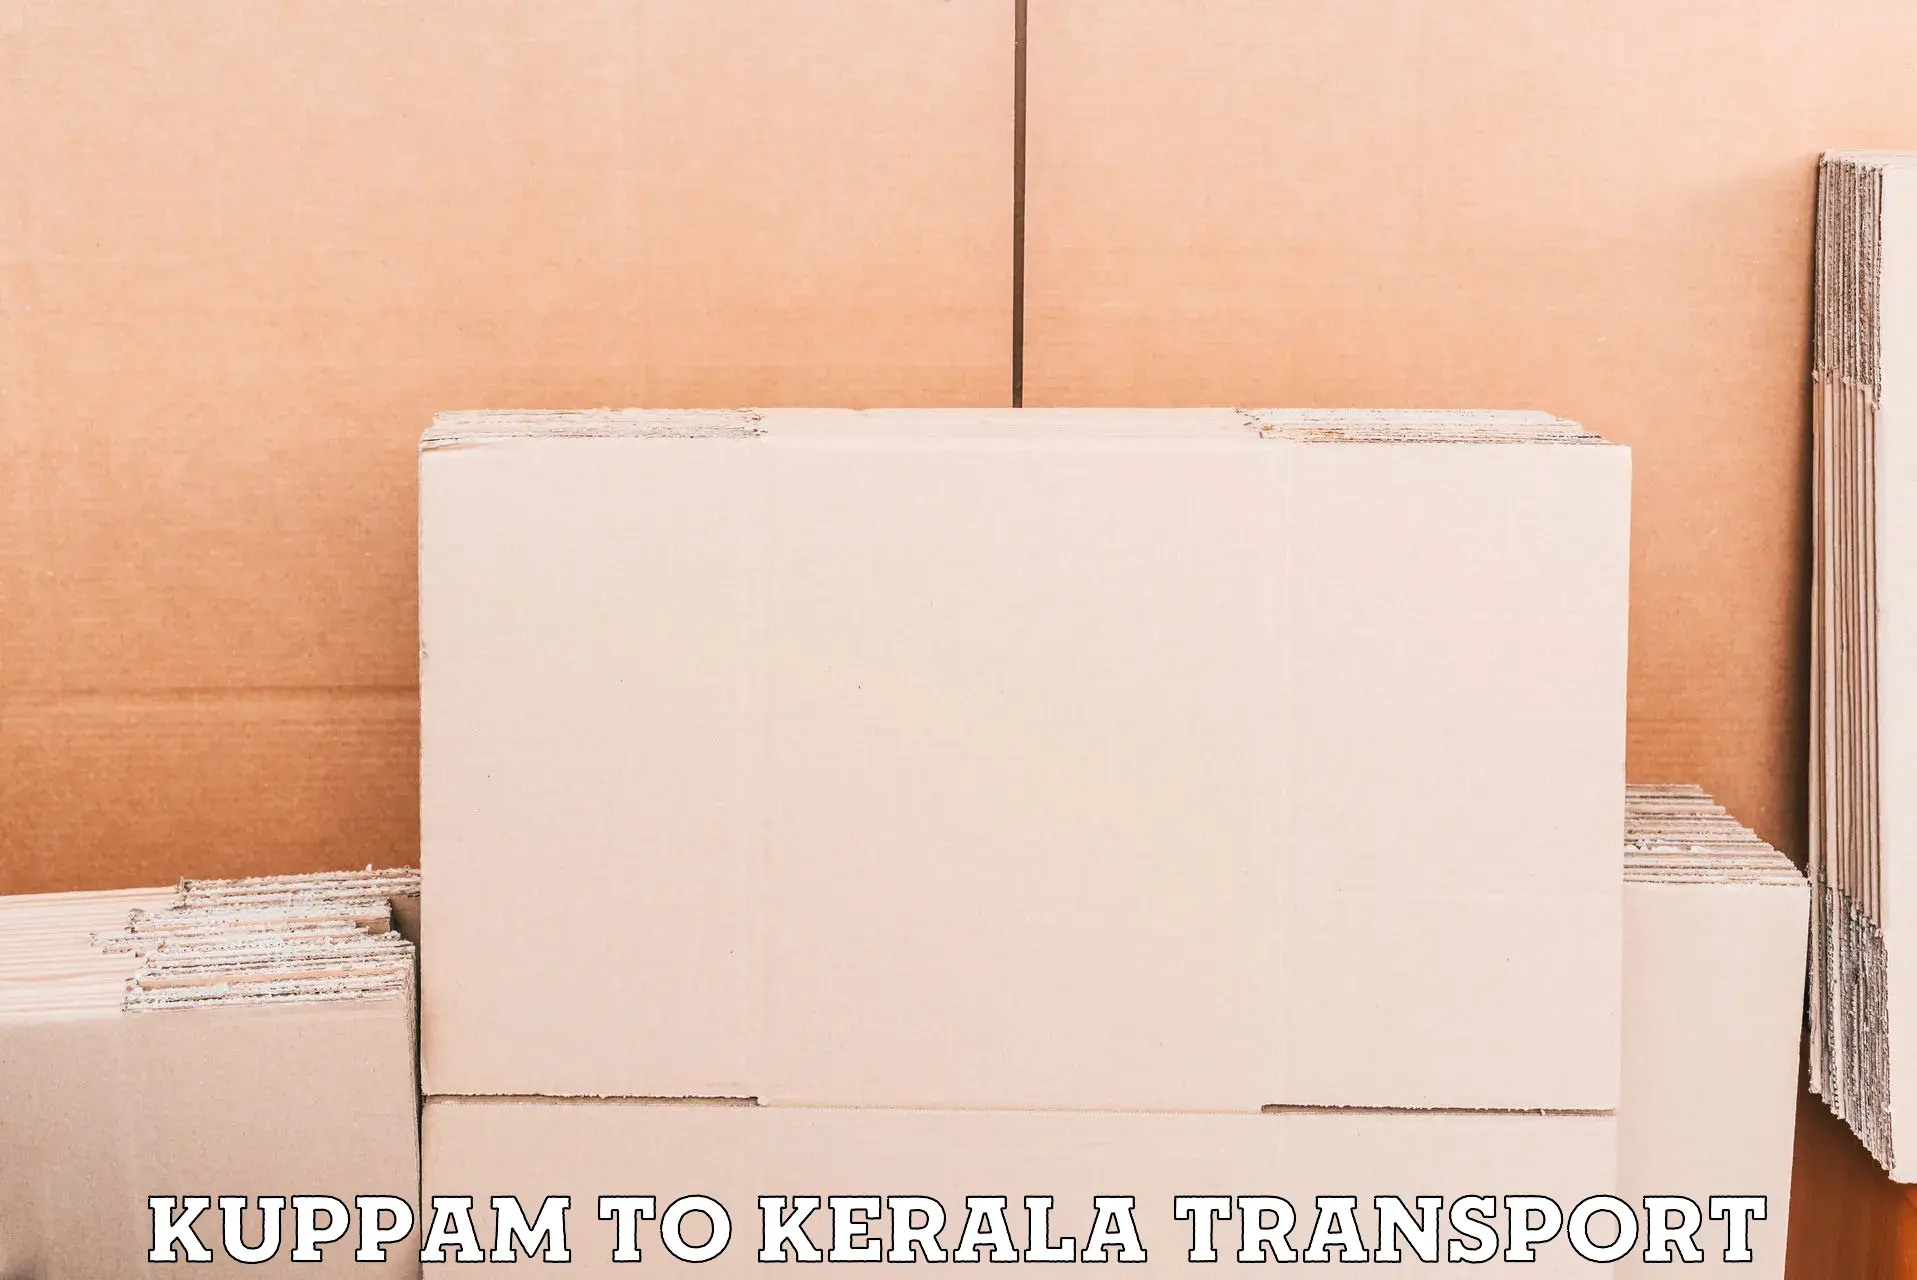 Intercity transport Kuppam to Palai